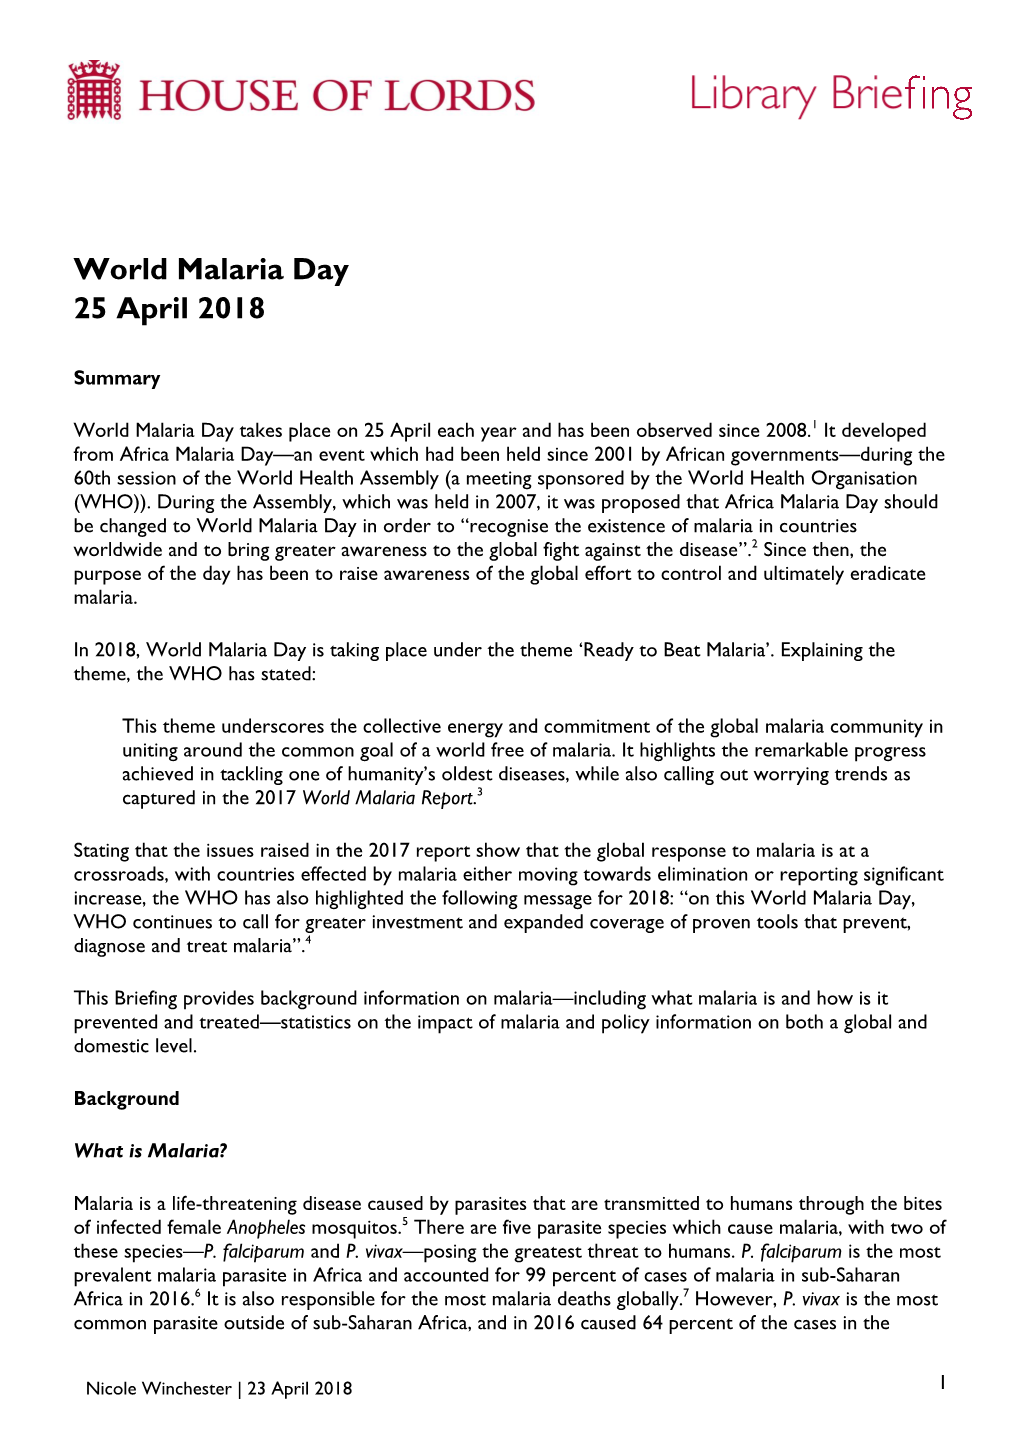 World Malaria Day 25 April 2018